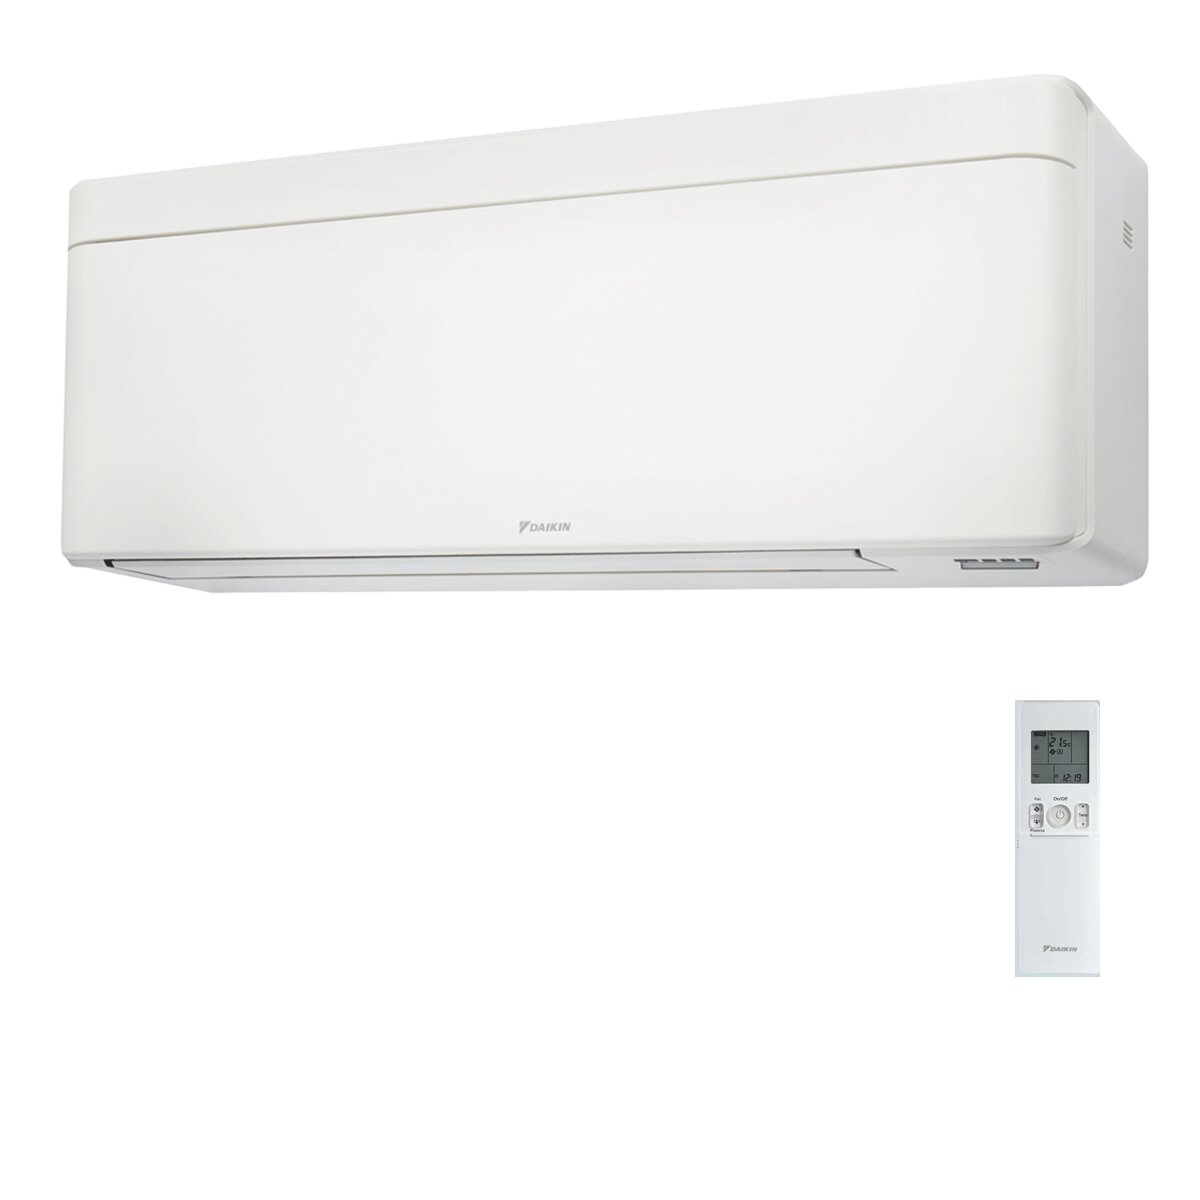 Daikin Stylish White trial split air conditioner 12000+15000+18000 BTU inverter A++ wifi external unit 7.4 kW